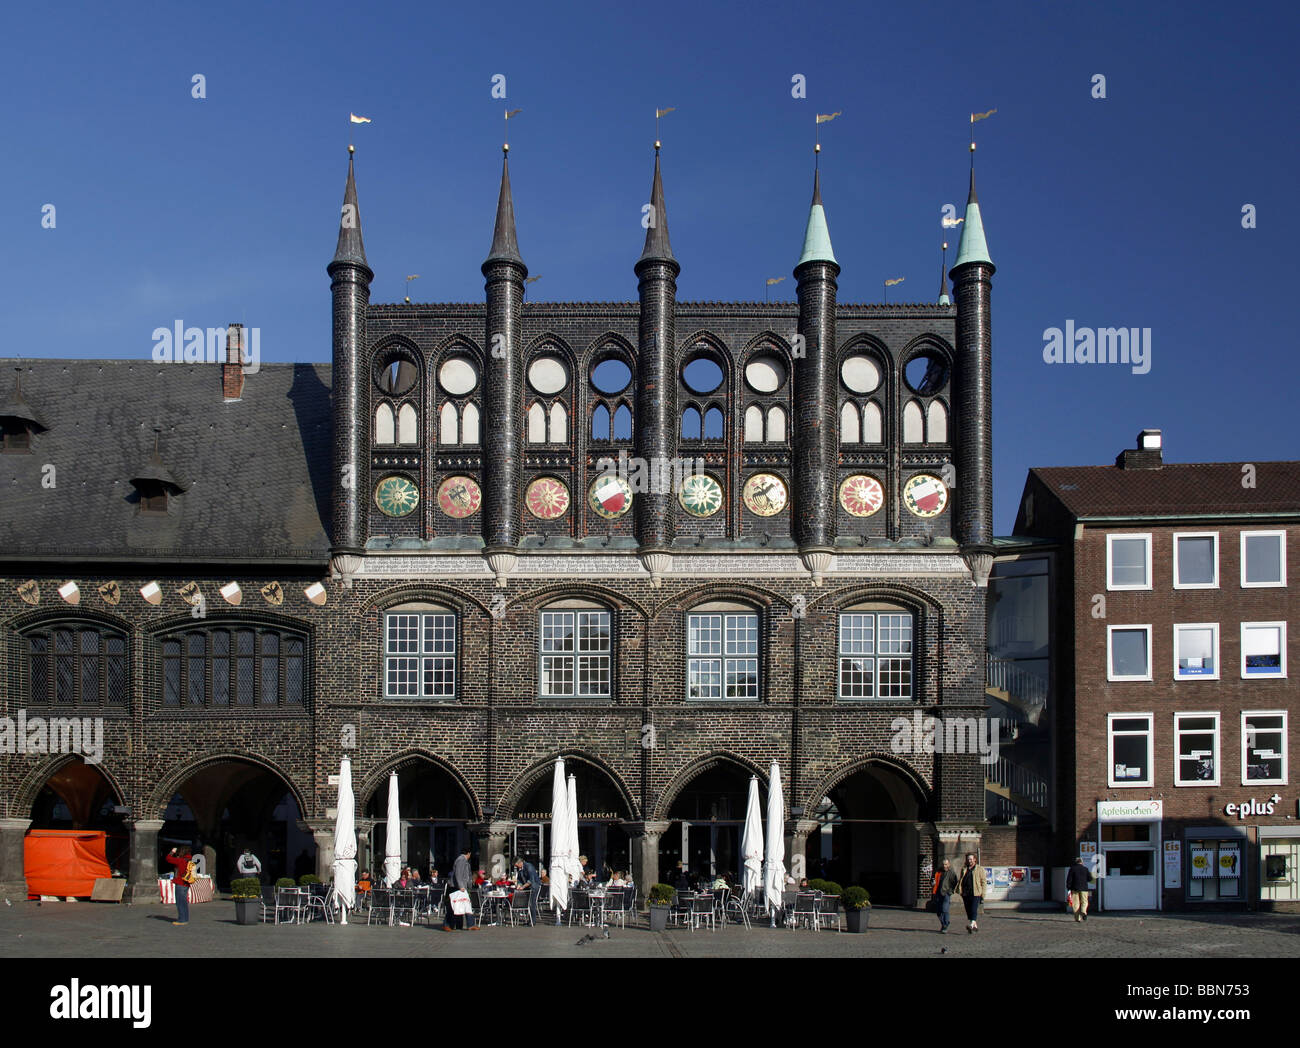 Rathaus mit verzierten Giebeln auf dem Marktplatz, Hansestadt Lübeck, Schleswig-Holstein, Deutschland, Europa Stockfoto